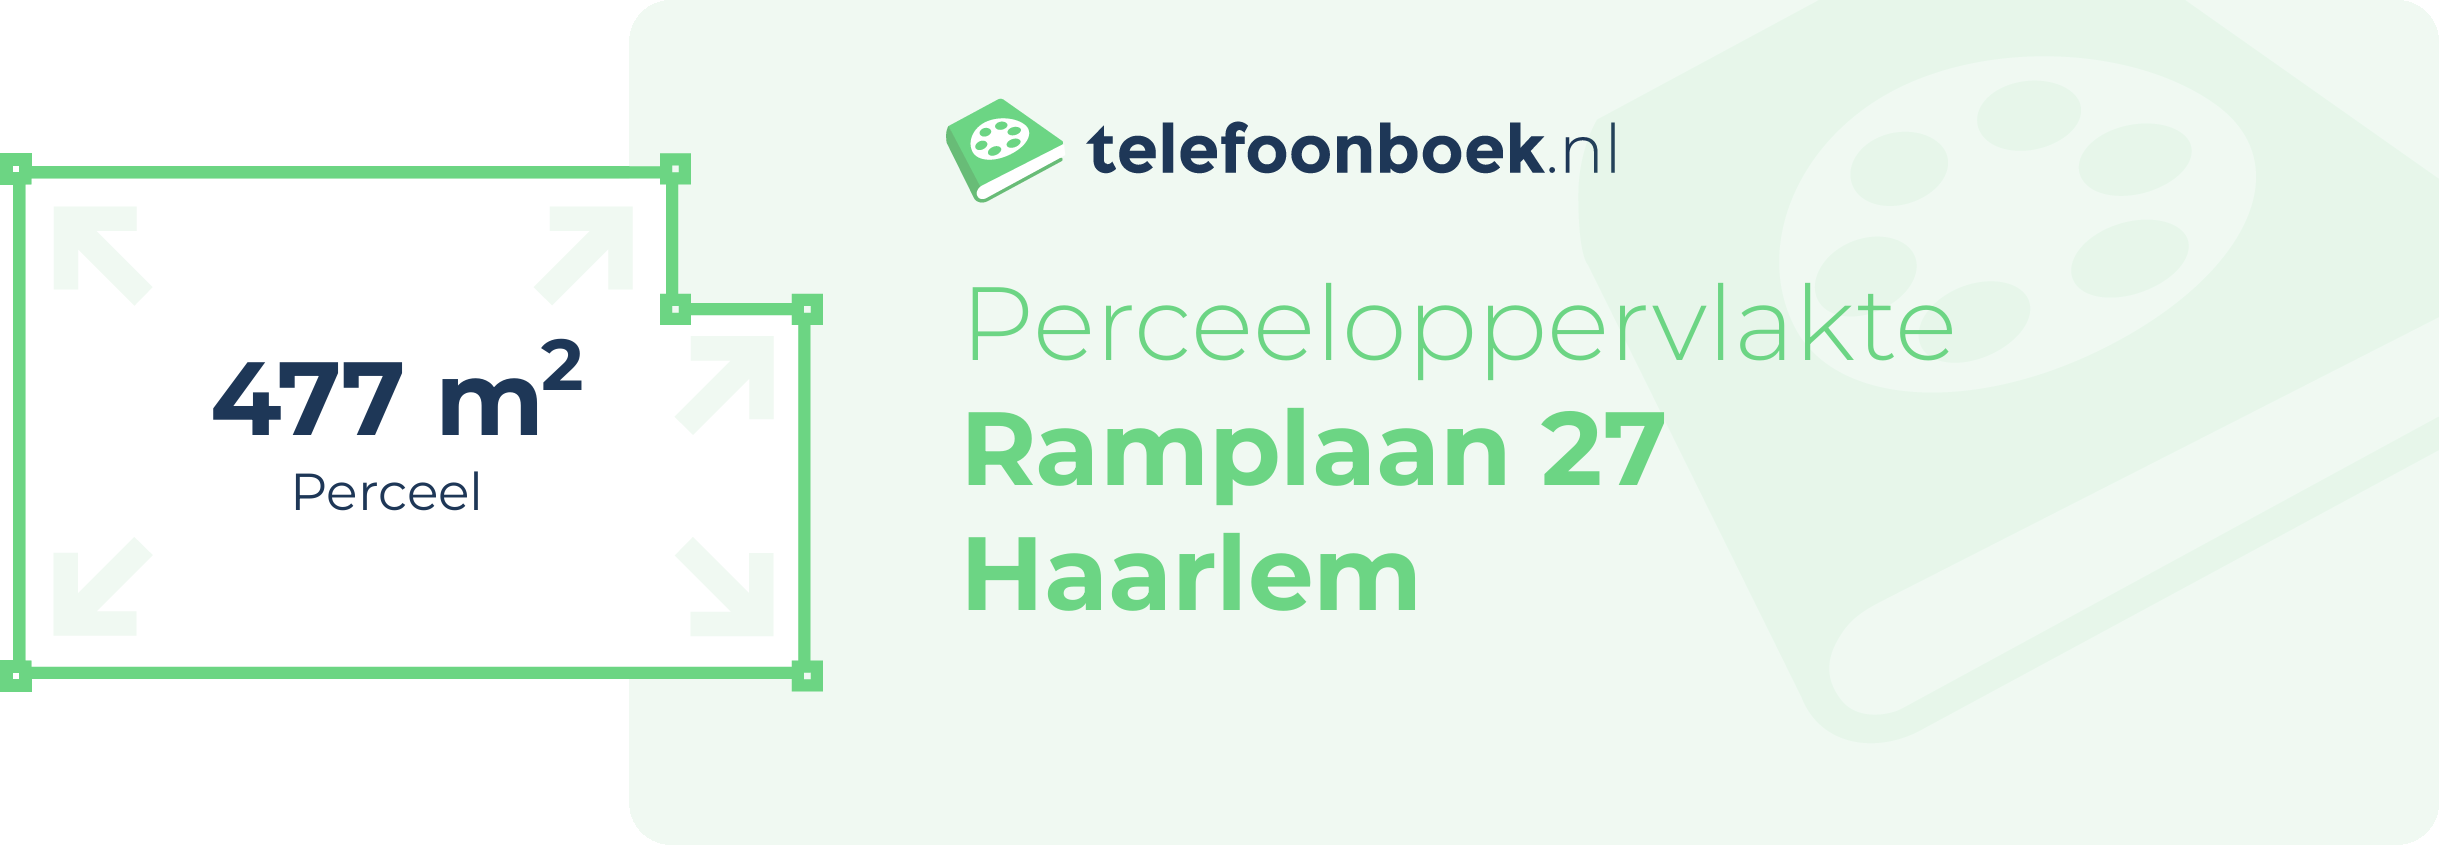 Perceeloppervlakte Ramplaan 27 Haarlem